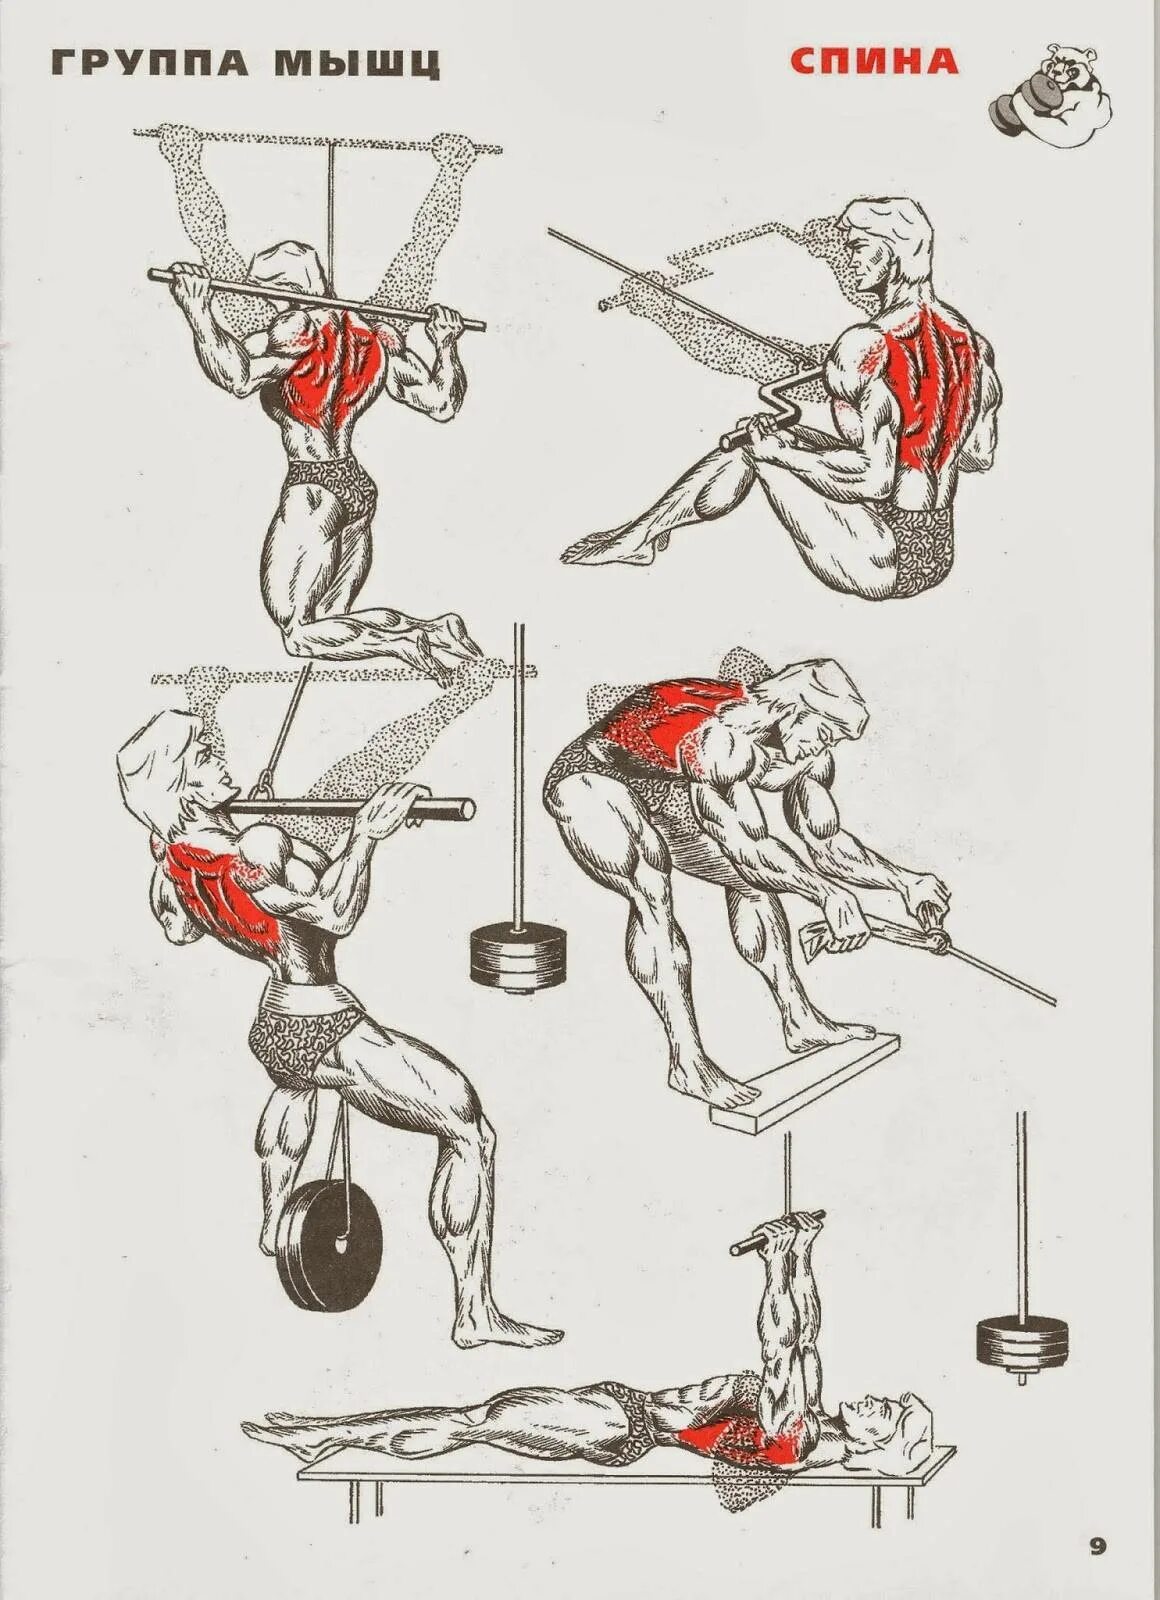 Упражнения для тренировки мышц спины в тренажерном зале. Упражнения для прокачки мышц спины. Базовые упражнения на спину в тренажерном зале. Упражнения на спину в тренажерном зале для мужчин.